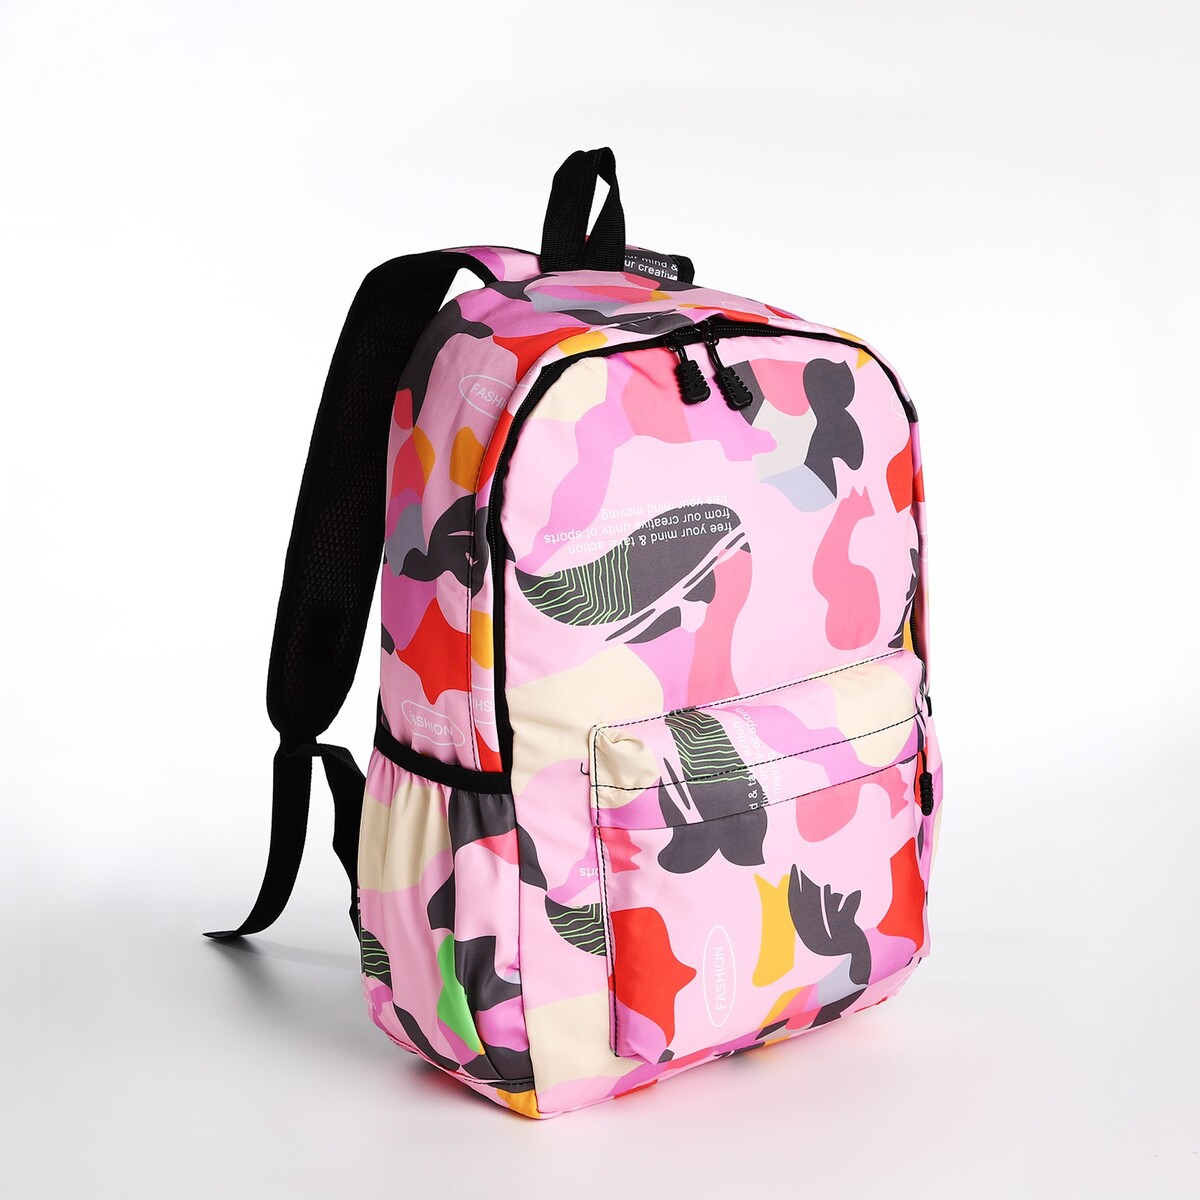 Рюкзак молодежный из текстиля, 3 кармана, цвет розовый рюкзак молодежный из текстиля 3 кармана розовый